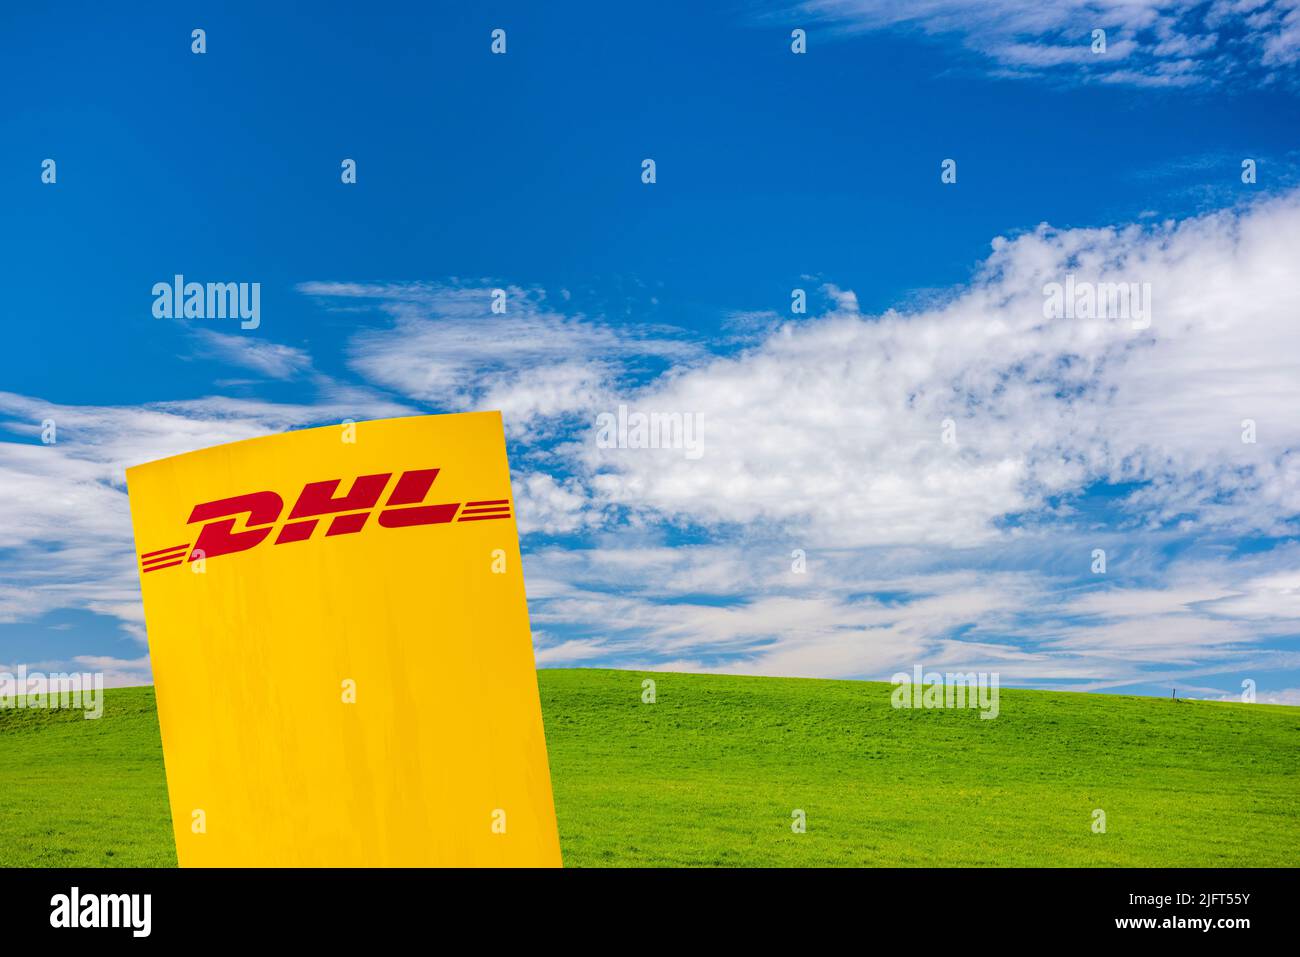 Werbe- und Firmenschild schild der Firma DHL Stock Photo